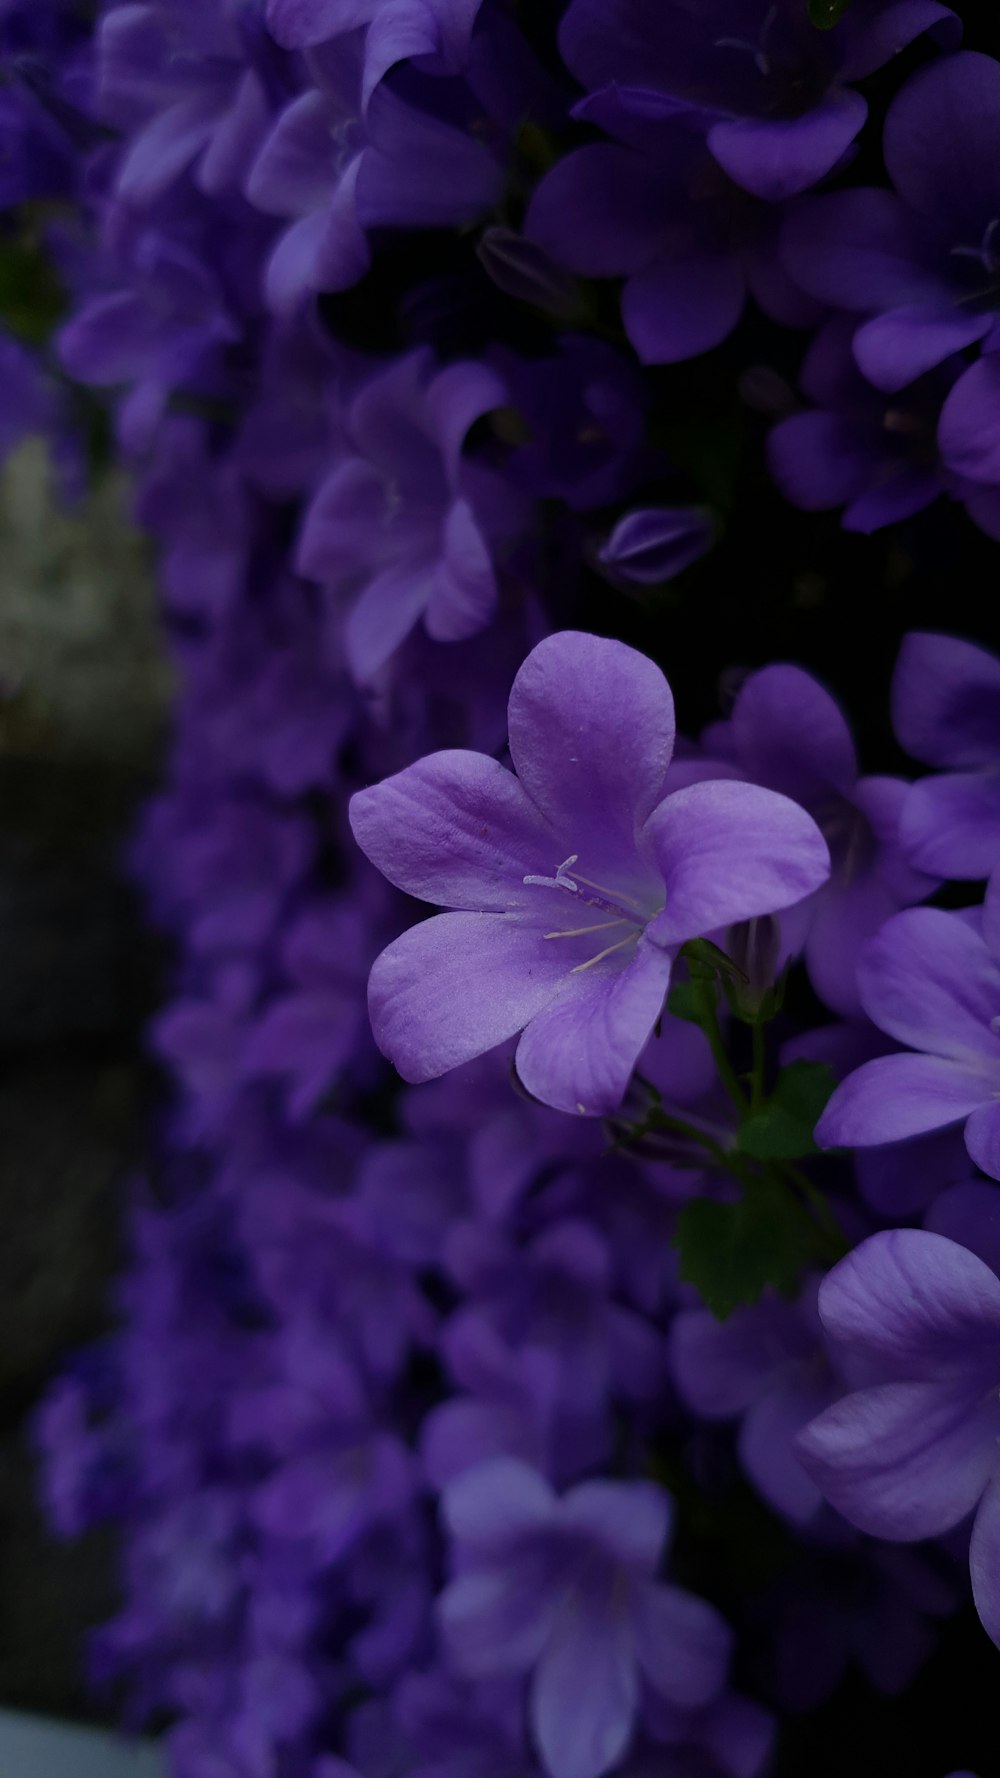 Hãy tận hưởng sự tươi mới và quyến rũ của những bông hoa tím miễn phí trong bộ sưu tập ảnh của chúng tôi. Mỗi bức ảnh đều được chọn lọc kỹ lưỡng và chỉnh sửa đến từng chi tiết nhỏ nhất. Nhanh chân truy cập vào hình để tải ngay bức ảnh hoa tím tuyệt đẹp nhất.